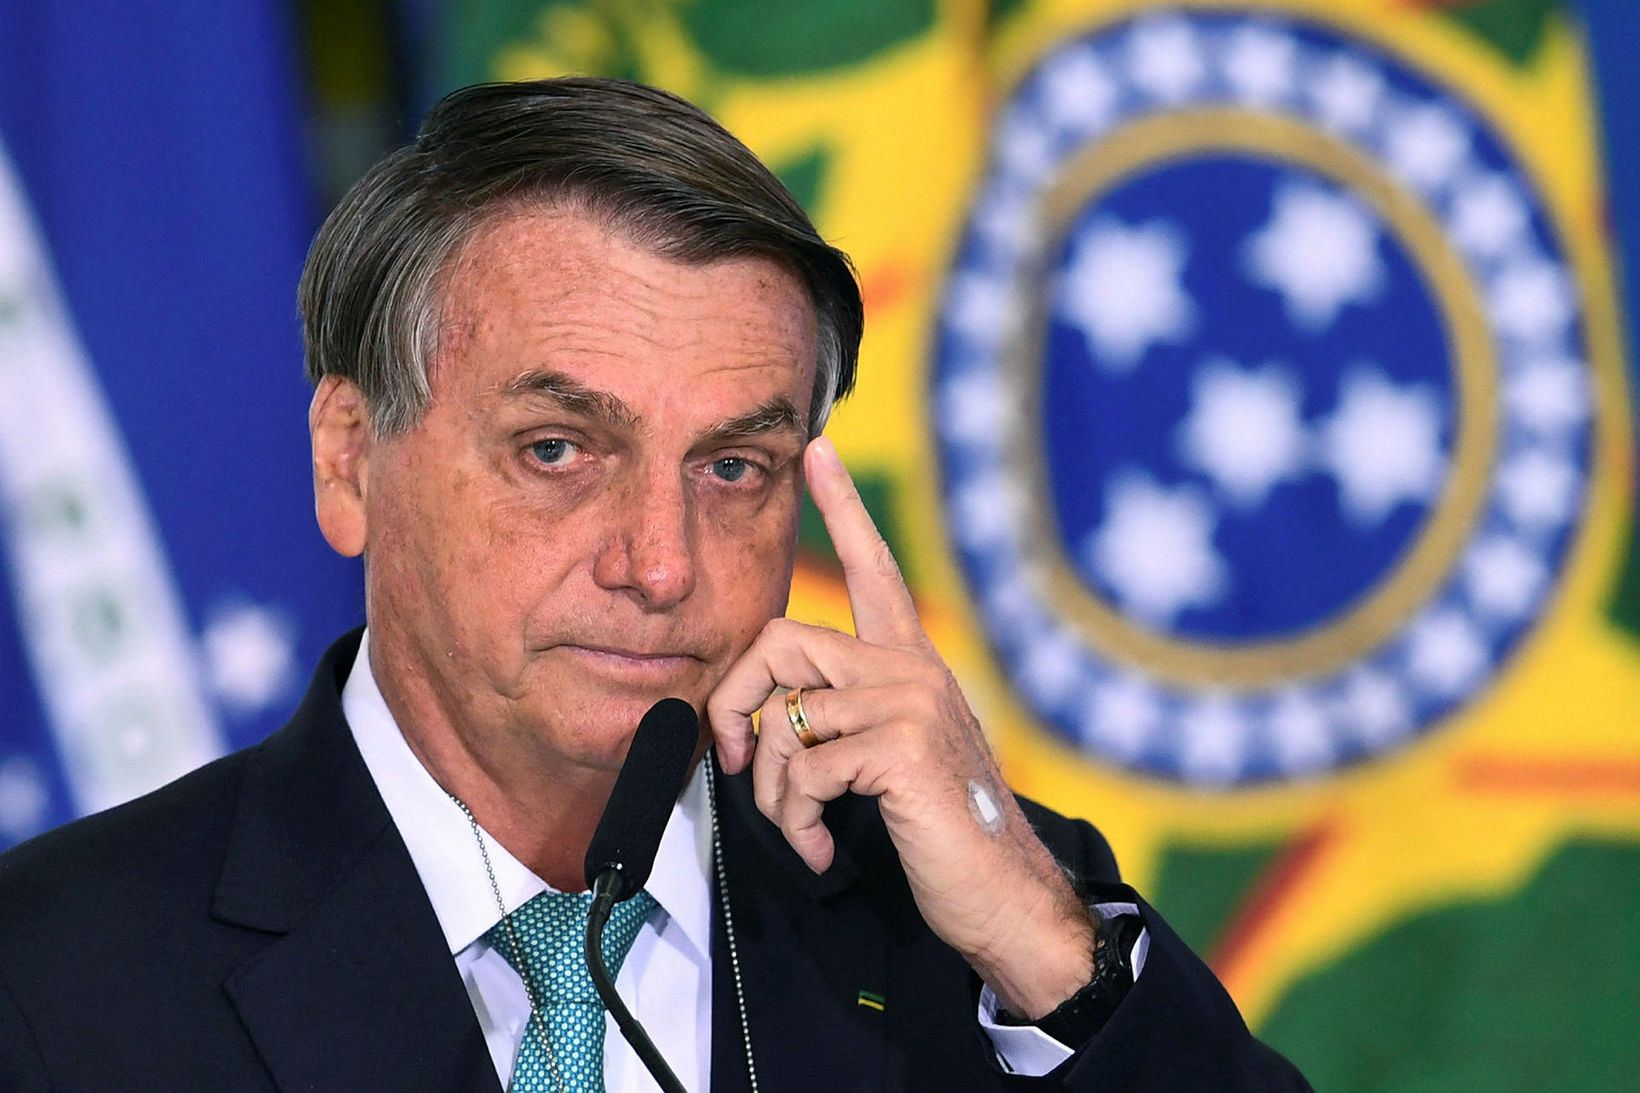 Jair Bolsonaro, forseti Brasilíu, er flúinn til Bandaríkjanna.